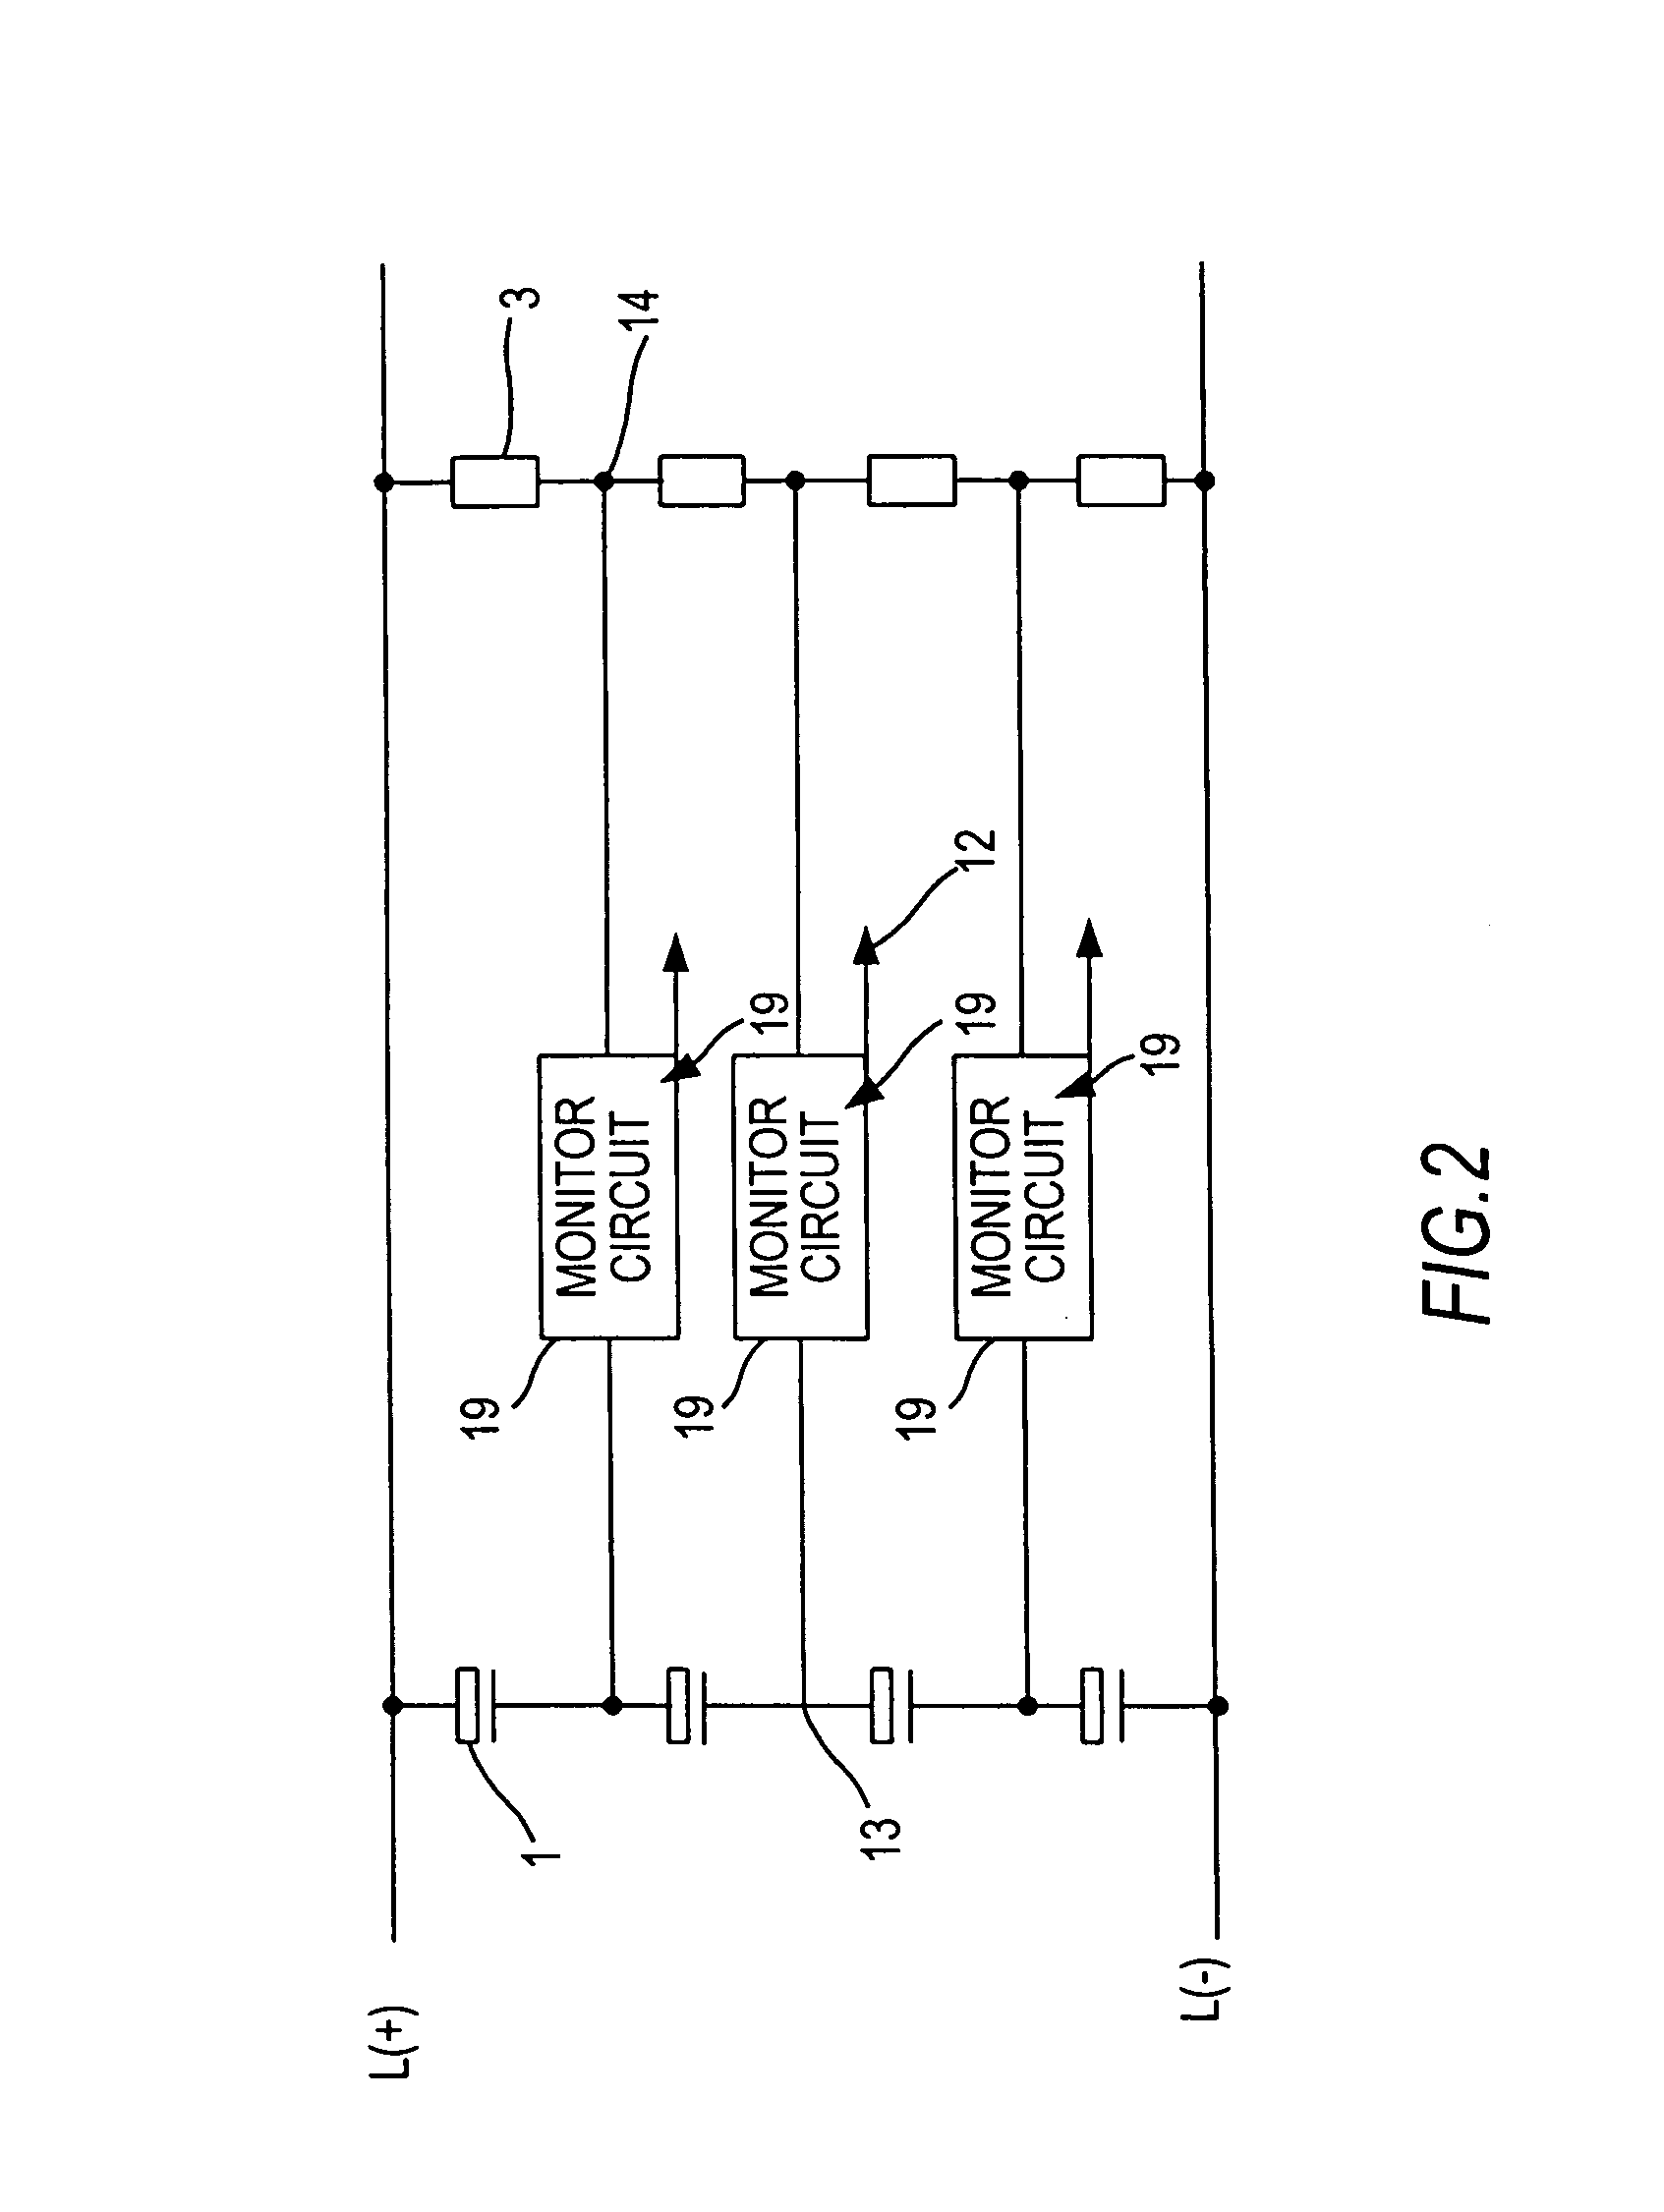 Intermediate circuit capacitor short-circuit monitoring